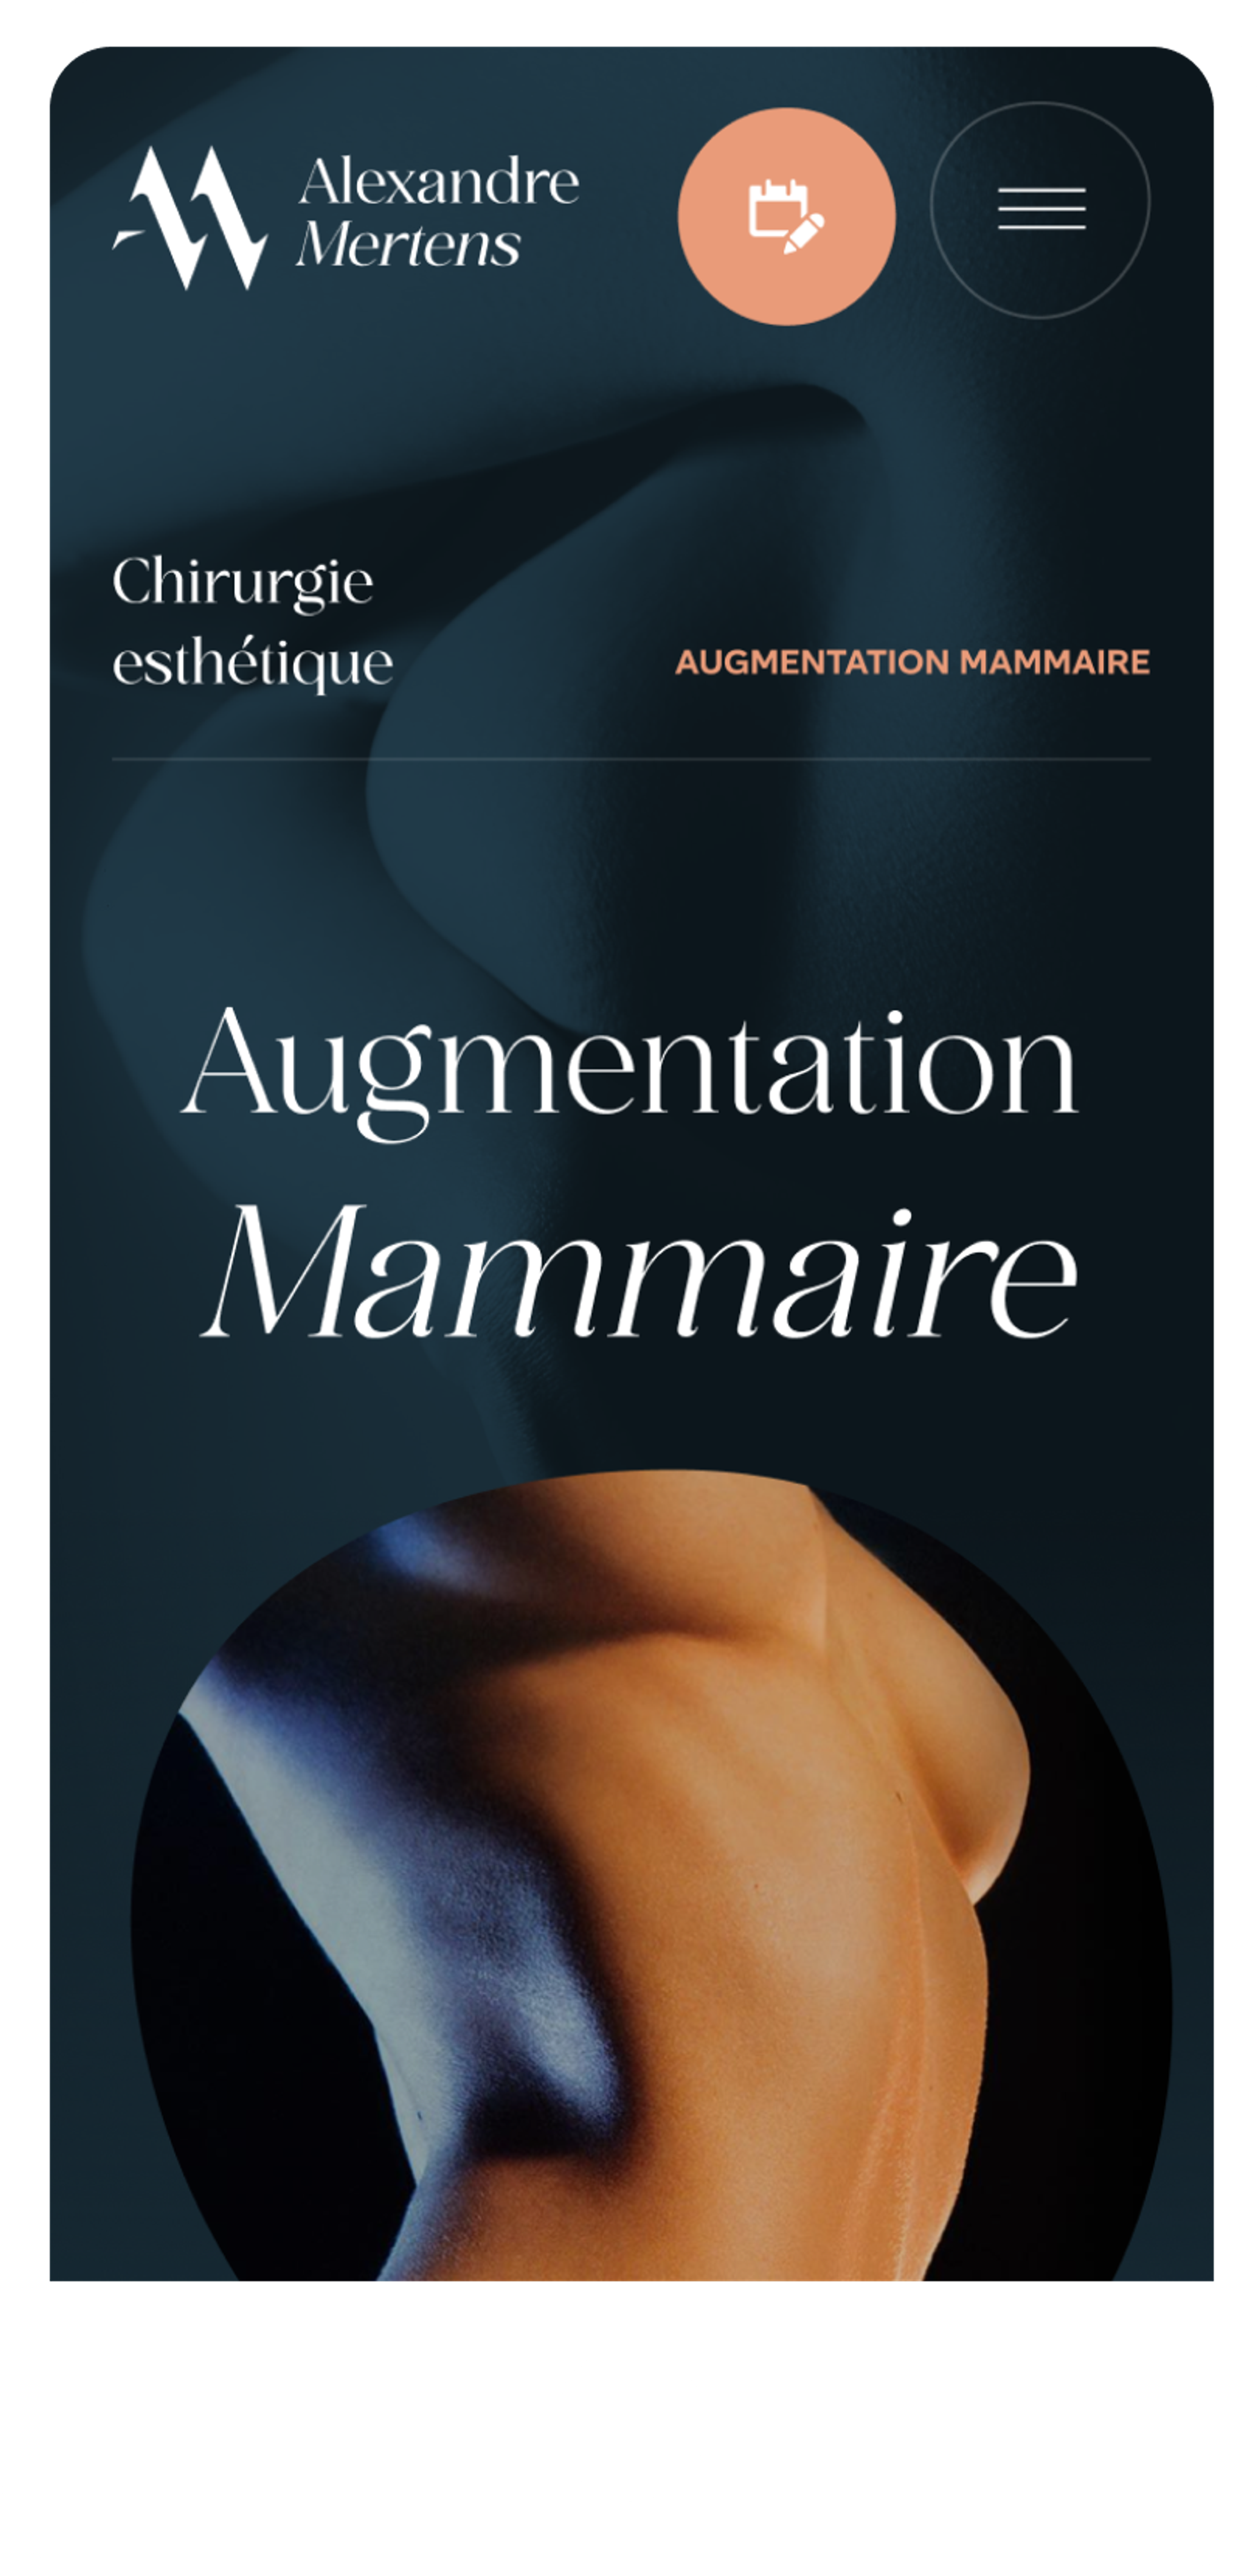 Alexandre Mertens breast augmentation mobile section